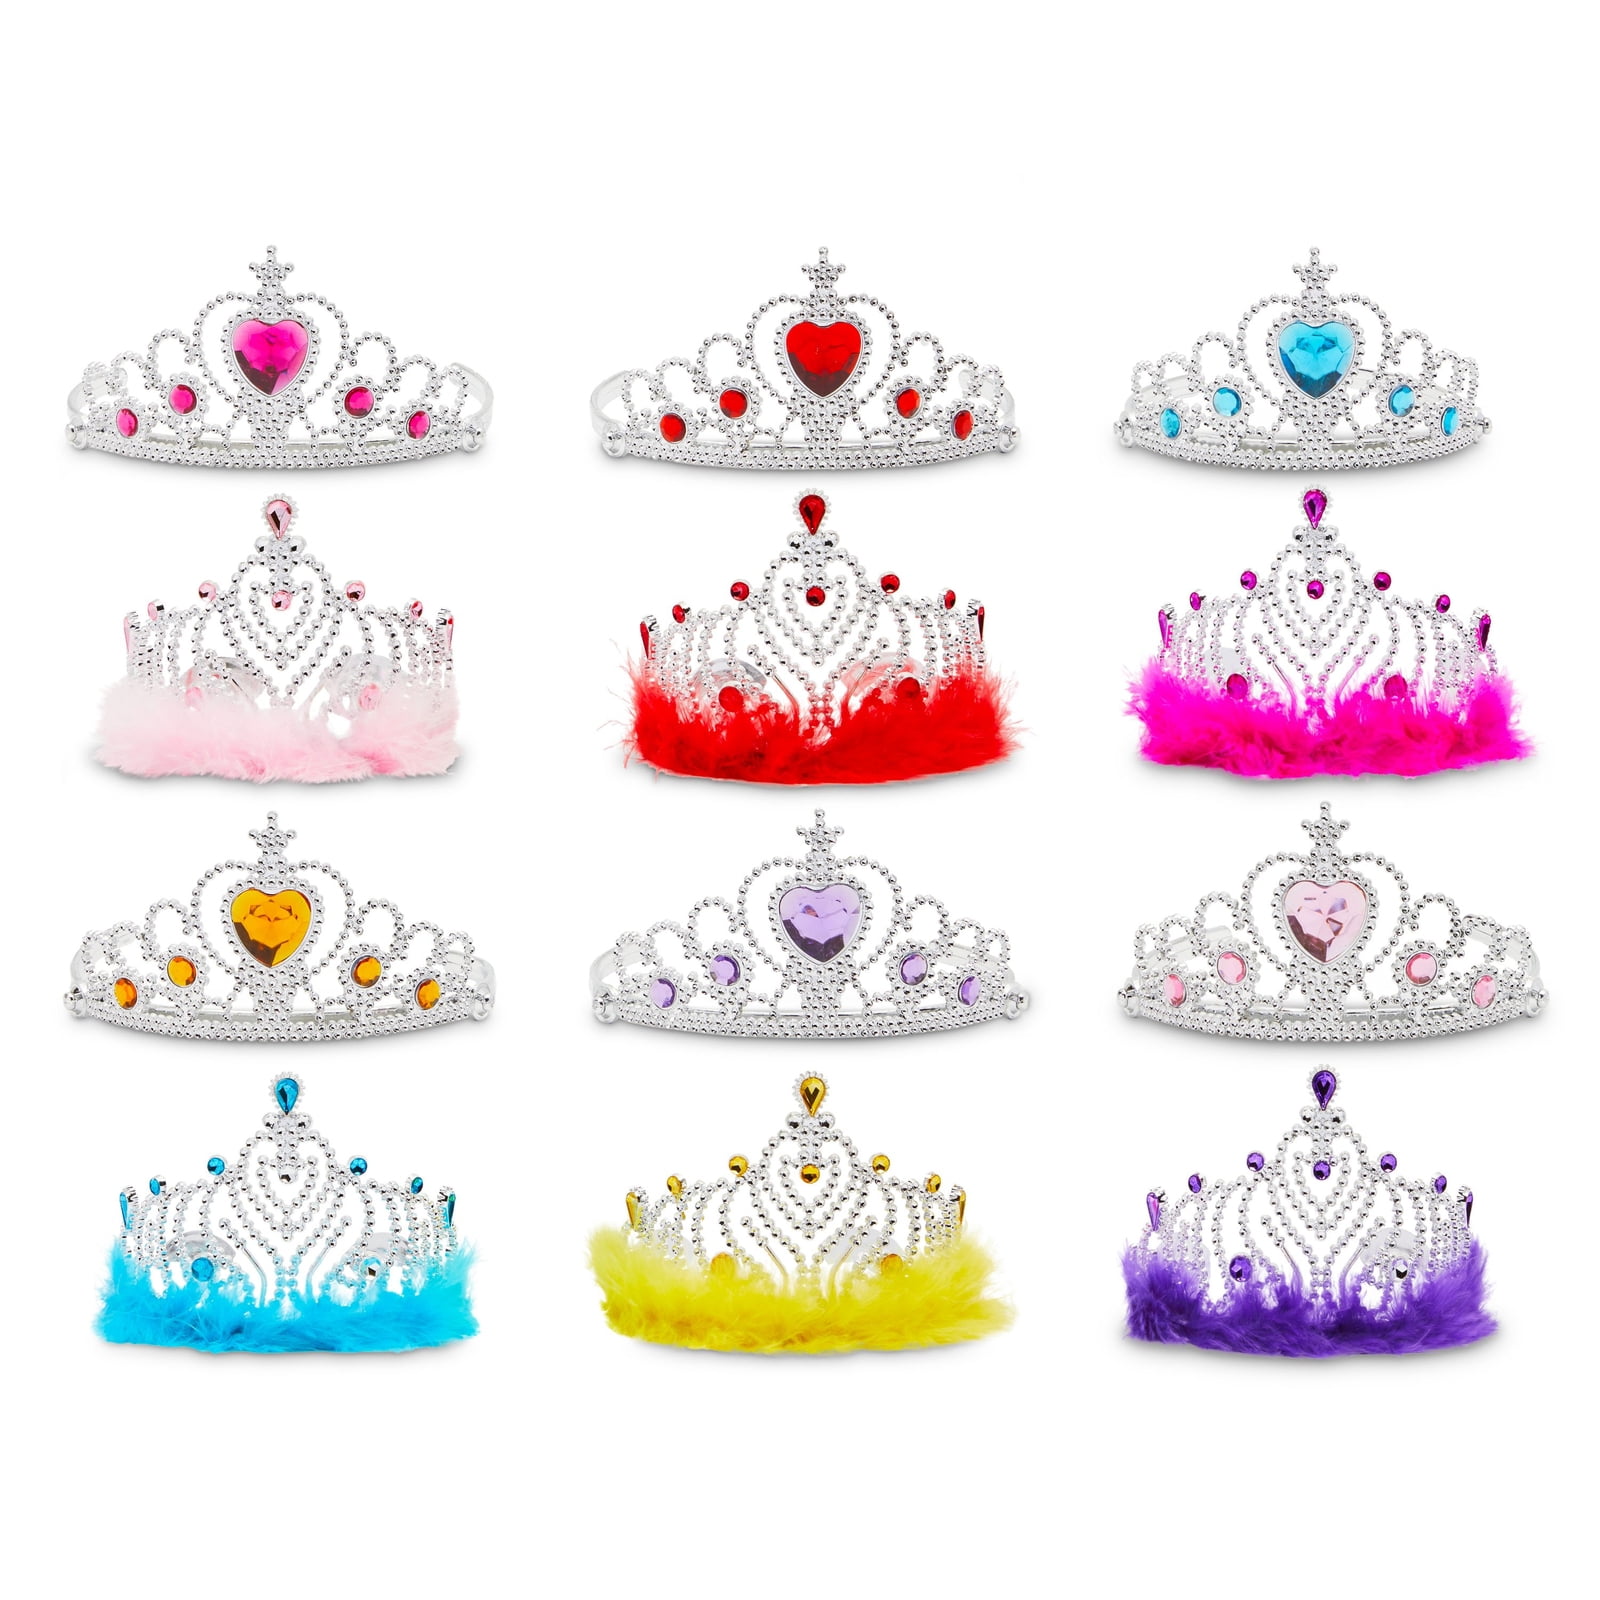 YEAHIBABY Princesse Tiara Couronne Little Girls Bandeau Habiller Accessoires pour Anniversaire Party Décorations de Jeu de rôle Fairytale,Lot de 5 